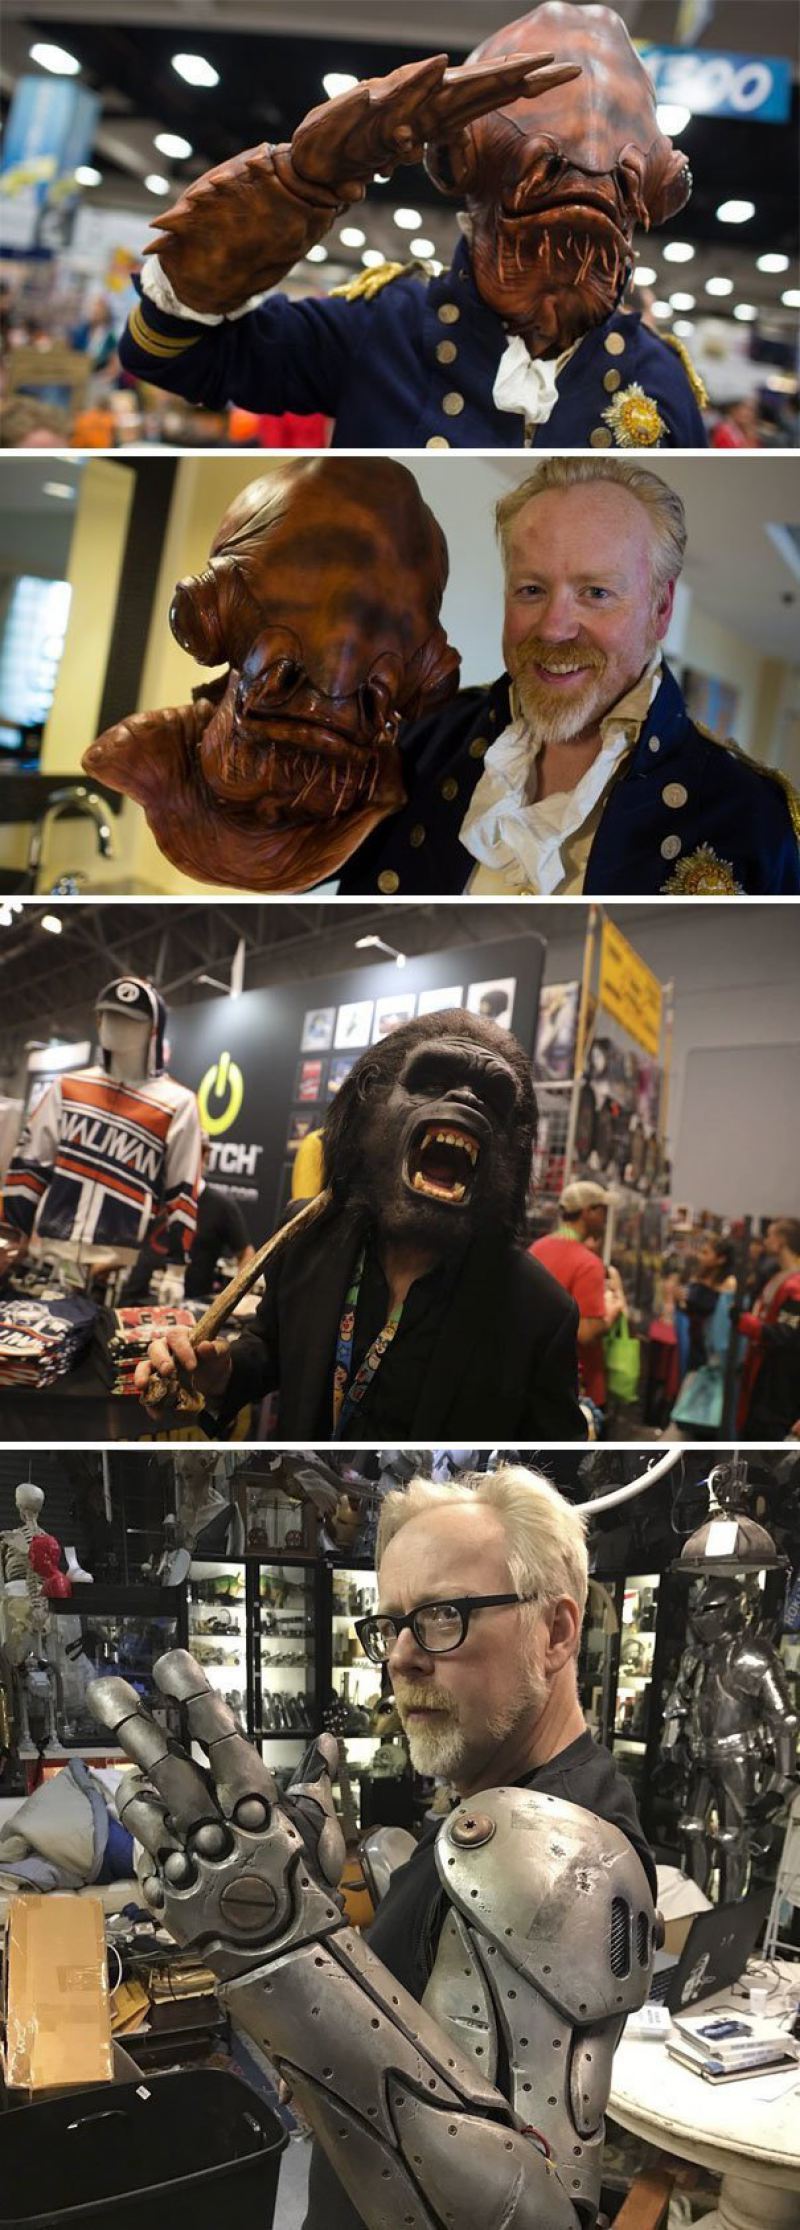 17. Ведущий Адам Сэвидж, специалист по спецэффектам, каждый год приходит на фестиваль Comic-Con в маскировке звезды, знаменитости, знаменитости дурачатся, известные люди, таланты и поклонники, тролли, троллинг, чувство юмора